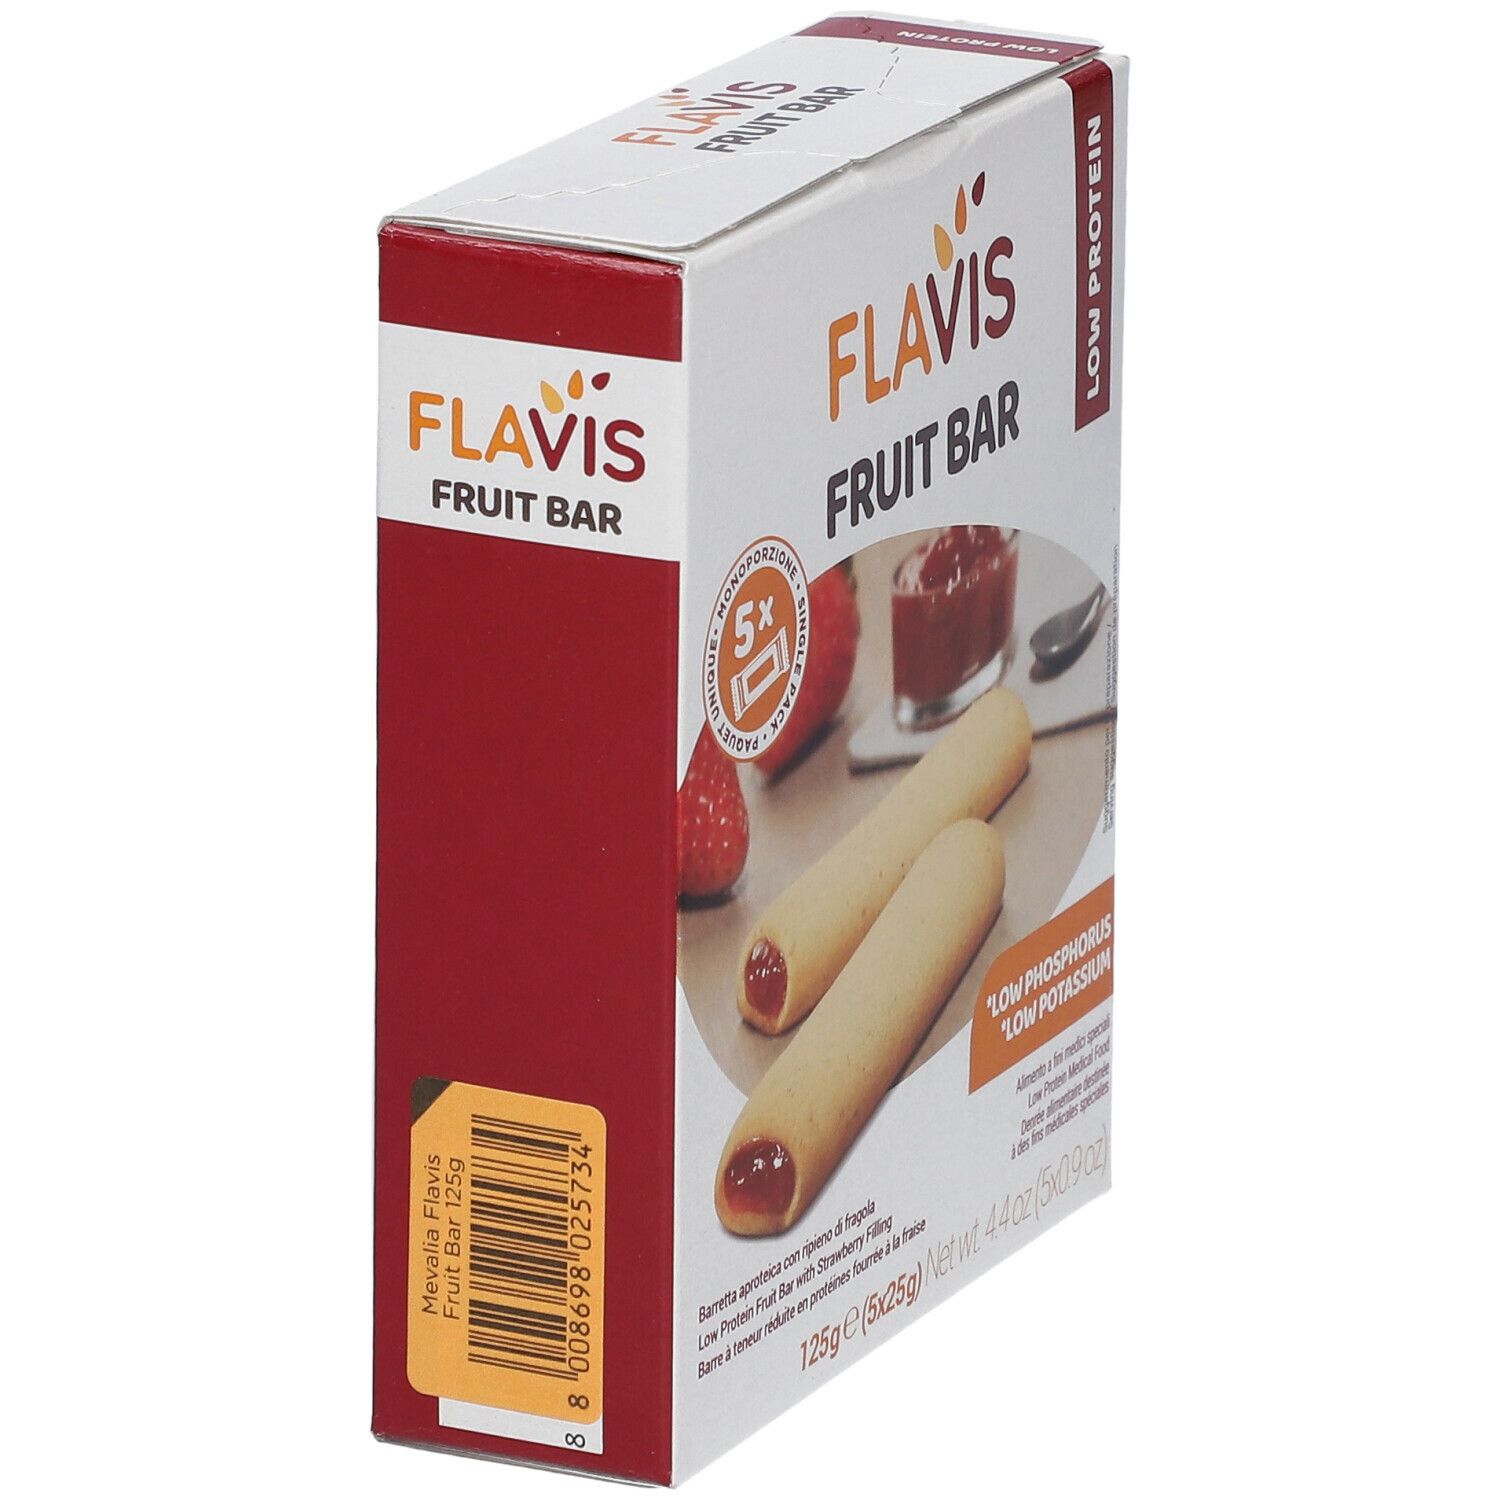 FLAVIS Fruit Bar